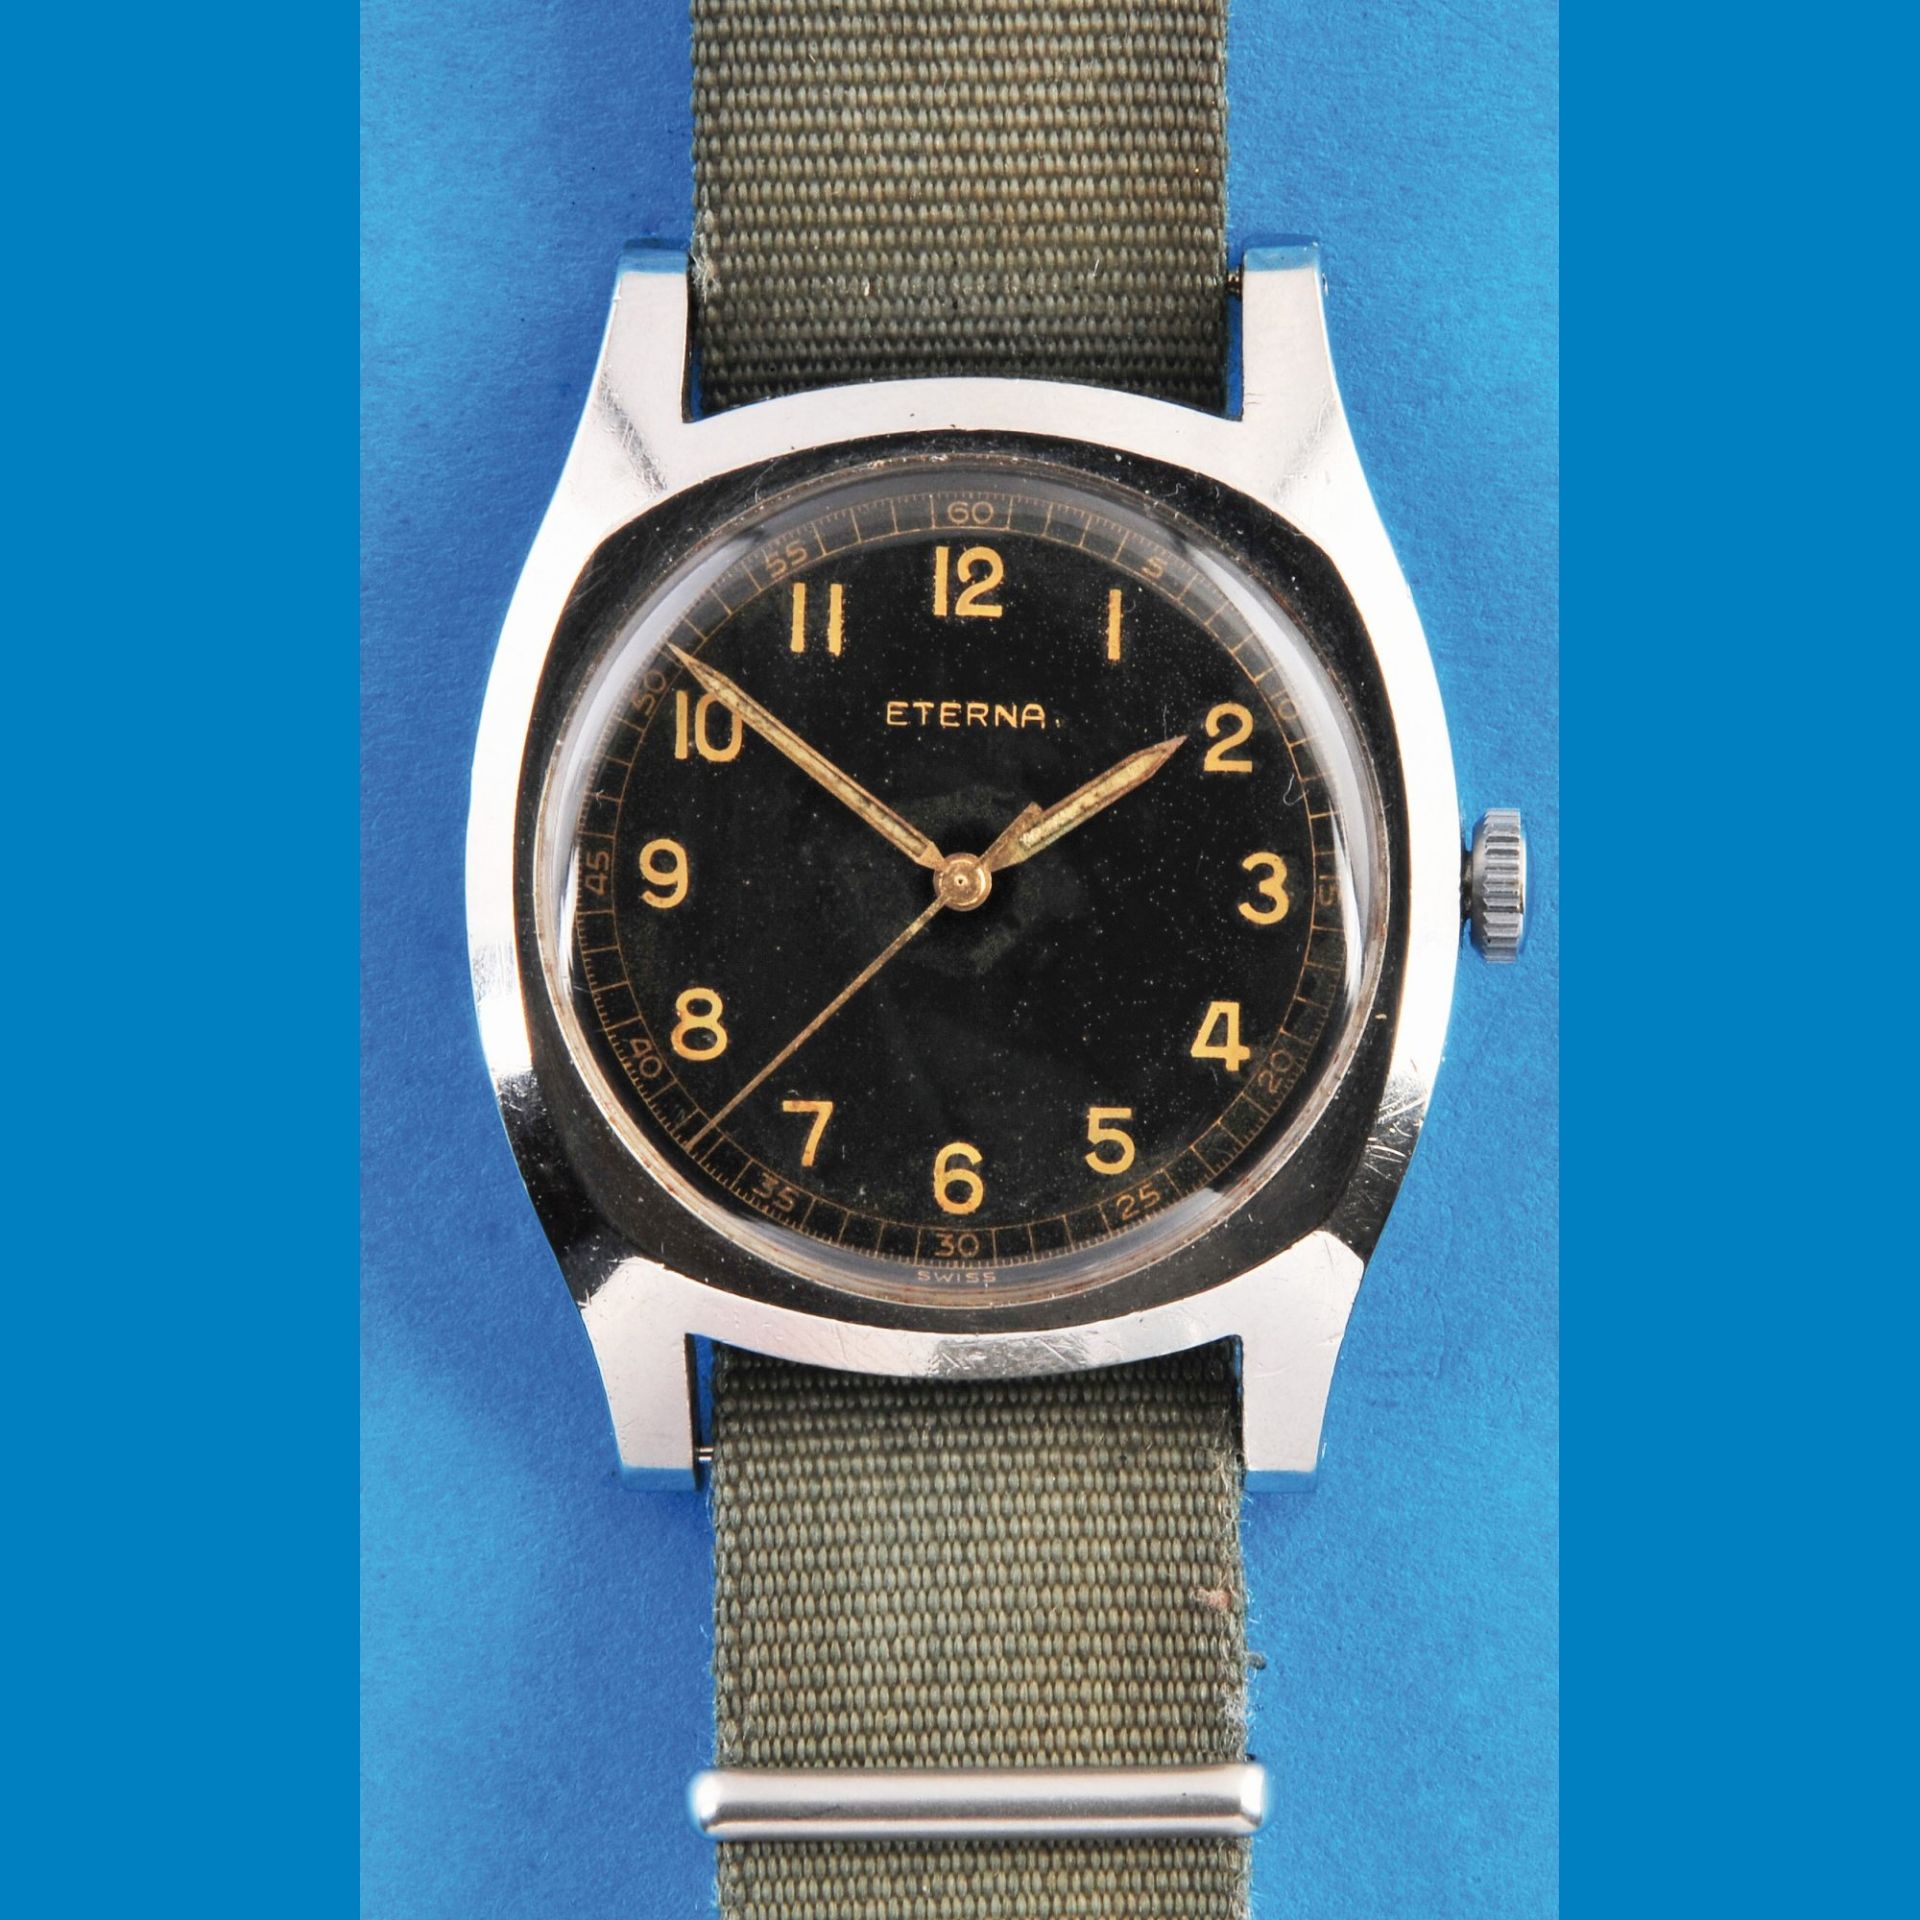 Eterna Flieger-Armbanduhr mit Zentralsekunde, Eterna cal. L852S, Stahlgehäuse, Schraubboden,